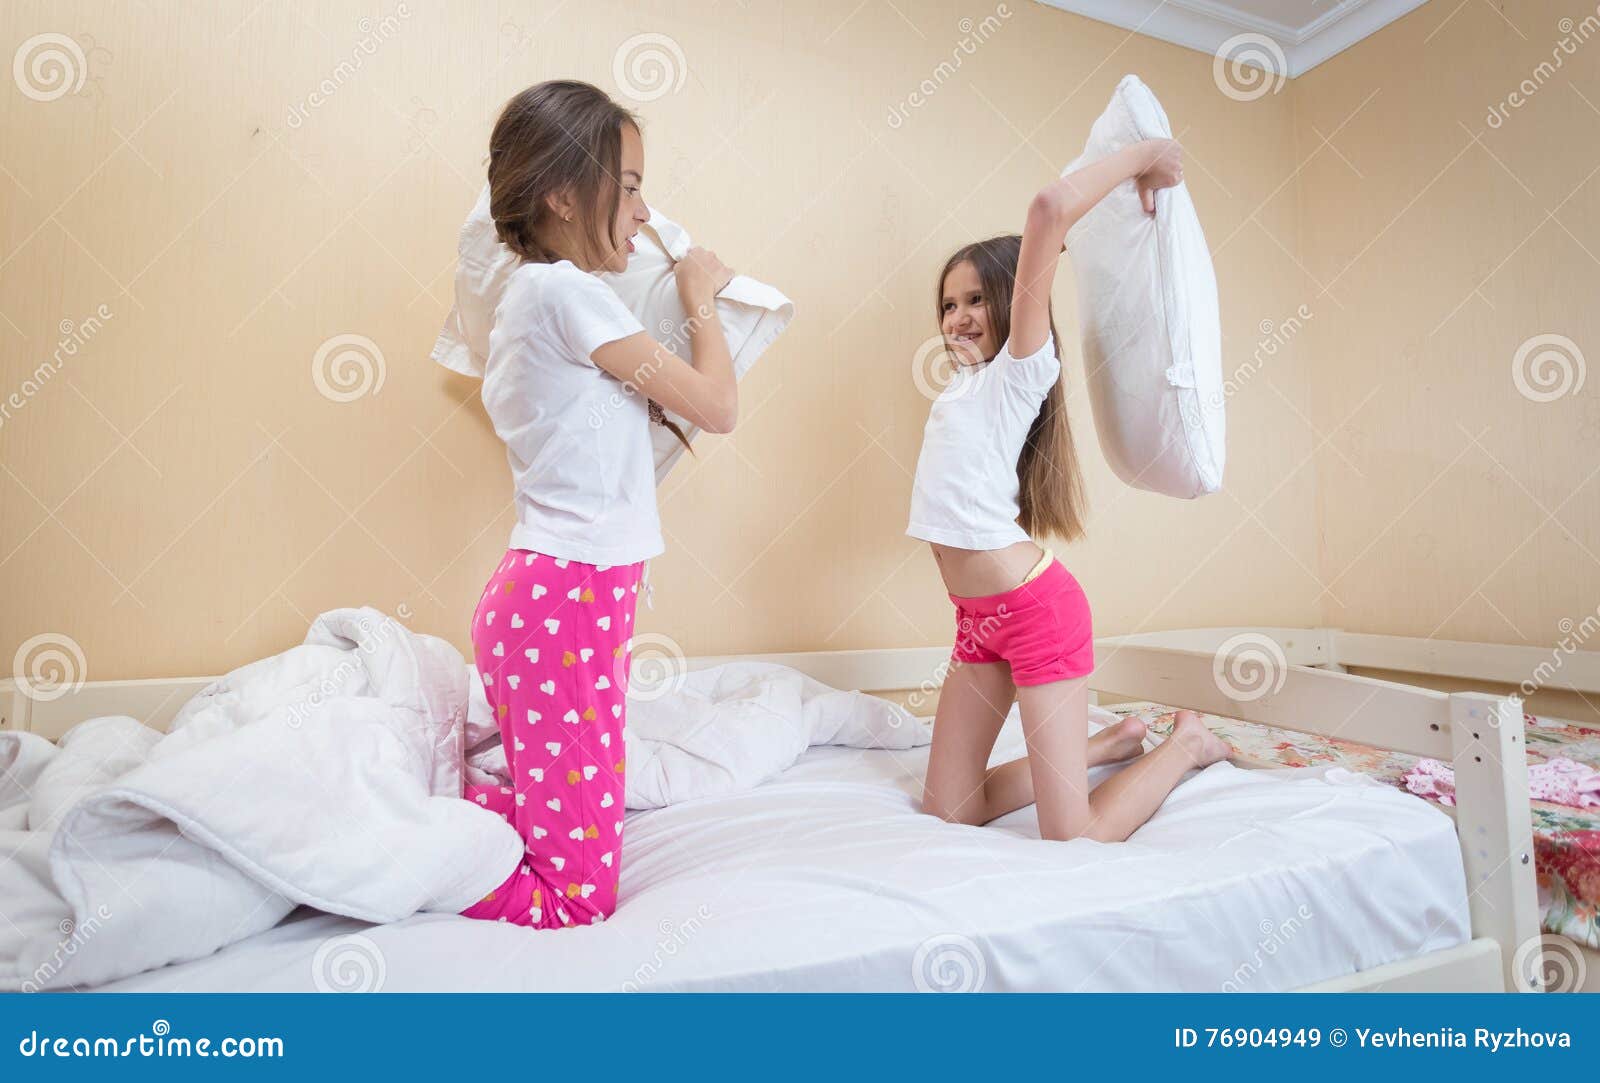 Сестры в пижамах кровать. Пижама для подростка девочки. Сестра в пижаме. Кровать для девочки 12 лет. Сестра пришла в трусиках